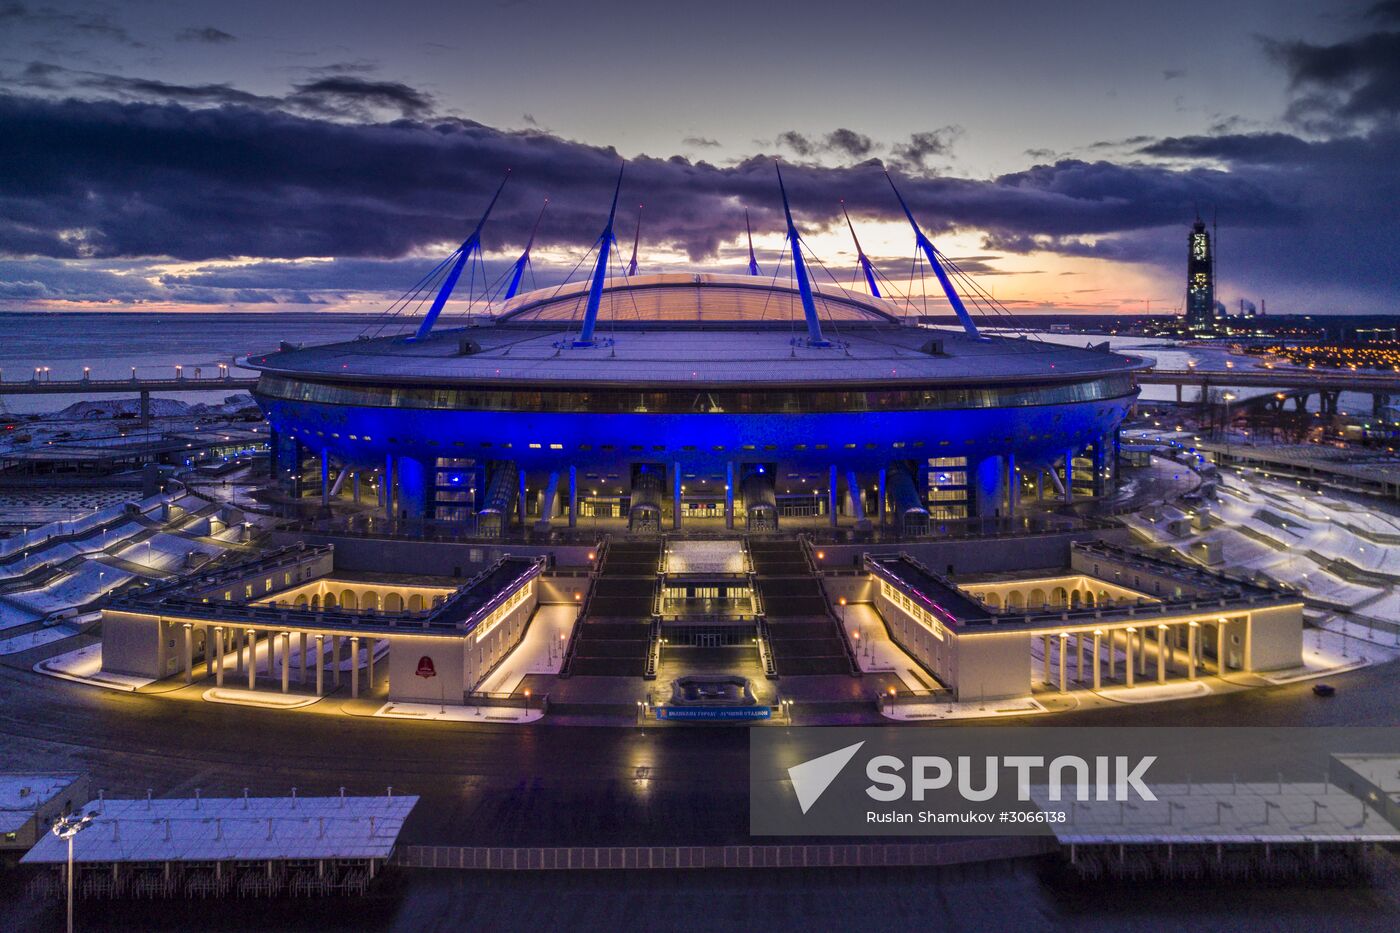 Saint Petersburg Stadium on Krestovsky Island in St. Petersburg